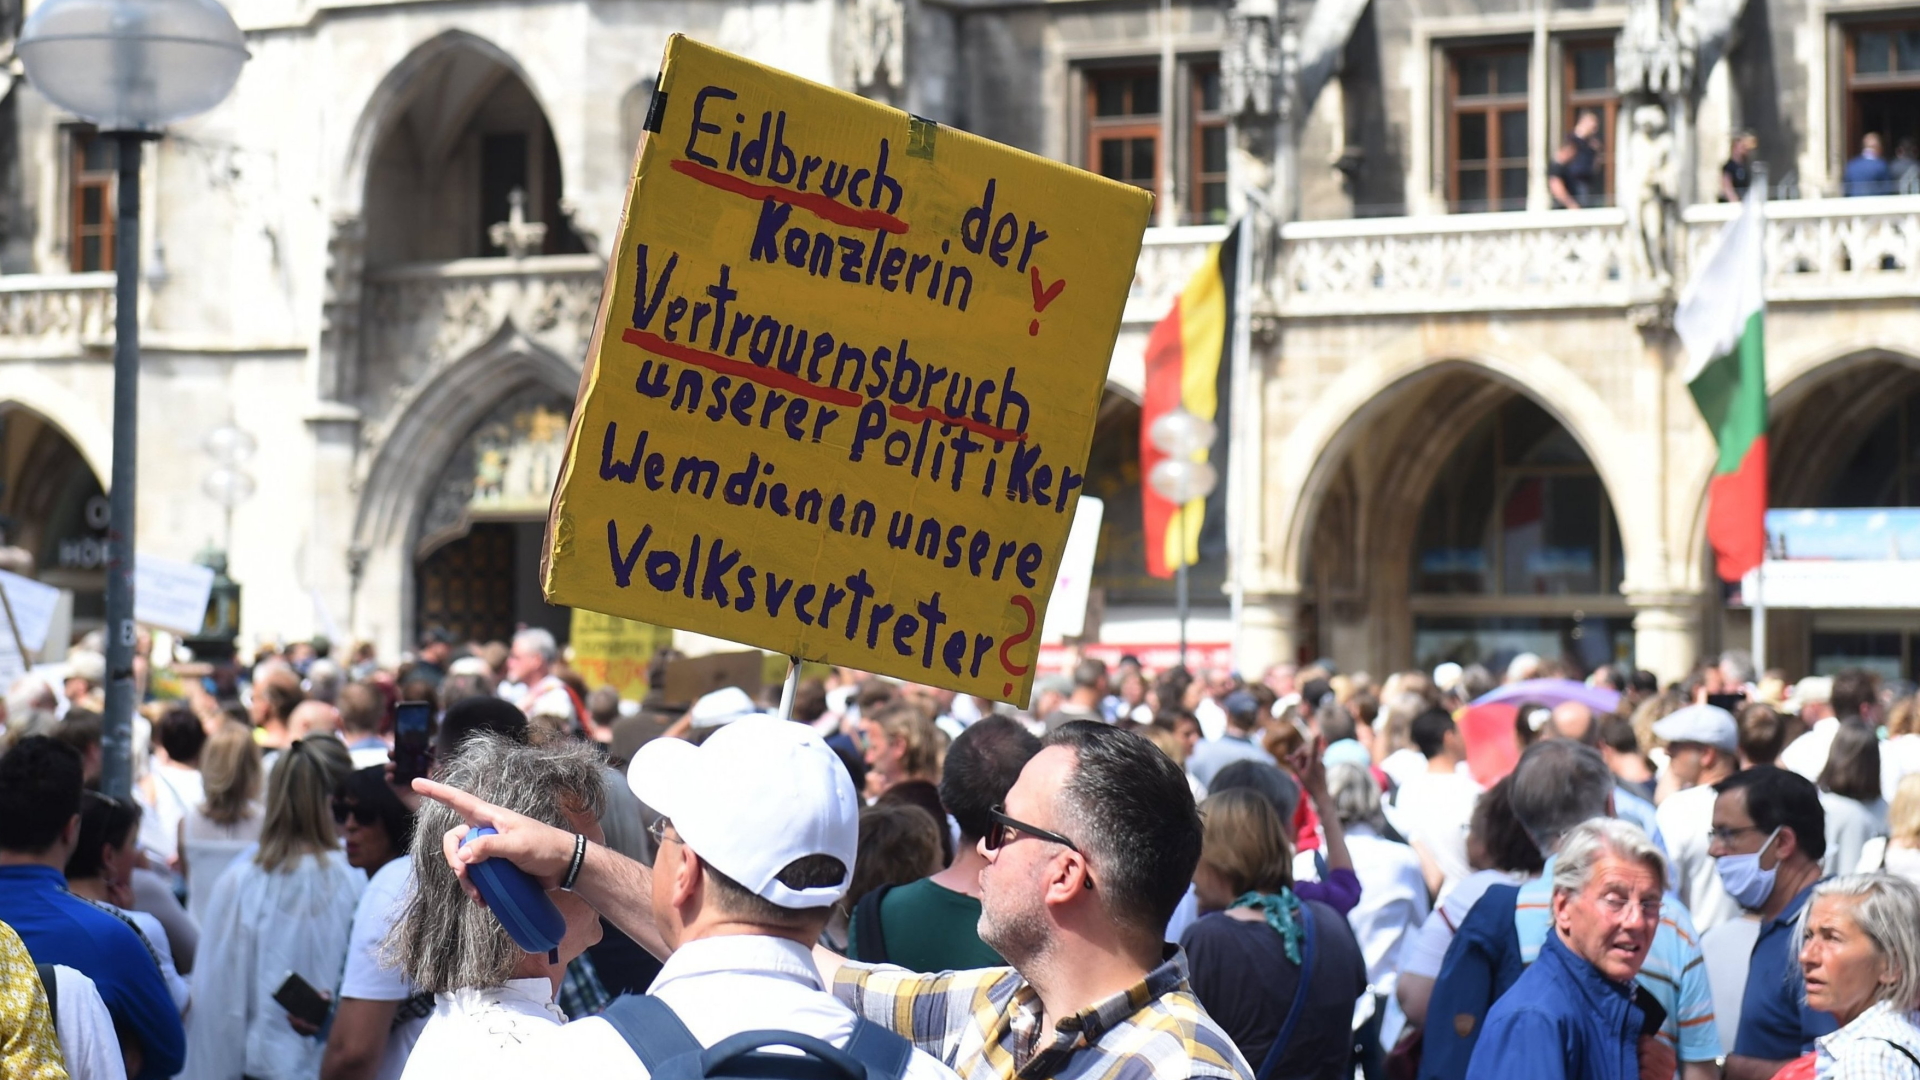 Menschen versammeln sich auf dem Marienplatz um zu demonstrieren, einer der Teilnehmer hält ein Schild mit der Aufschrift "Eidbruch der Kanzlerin". | dpa